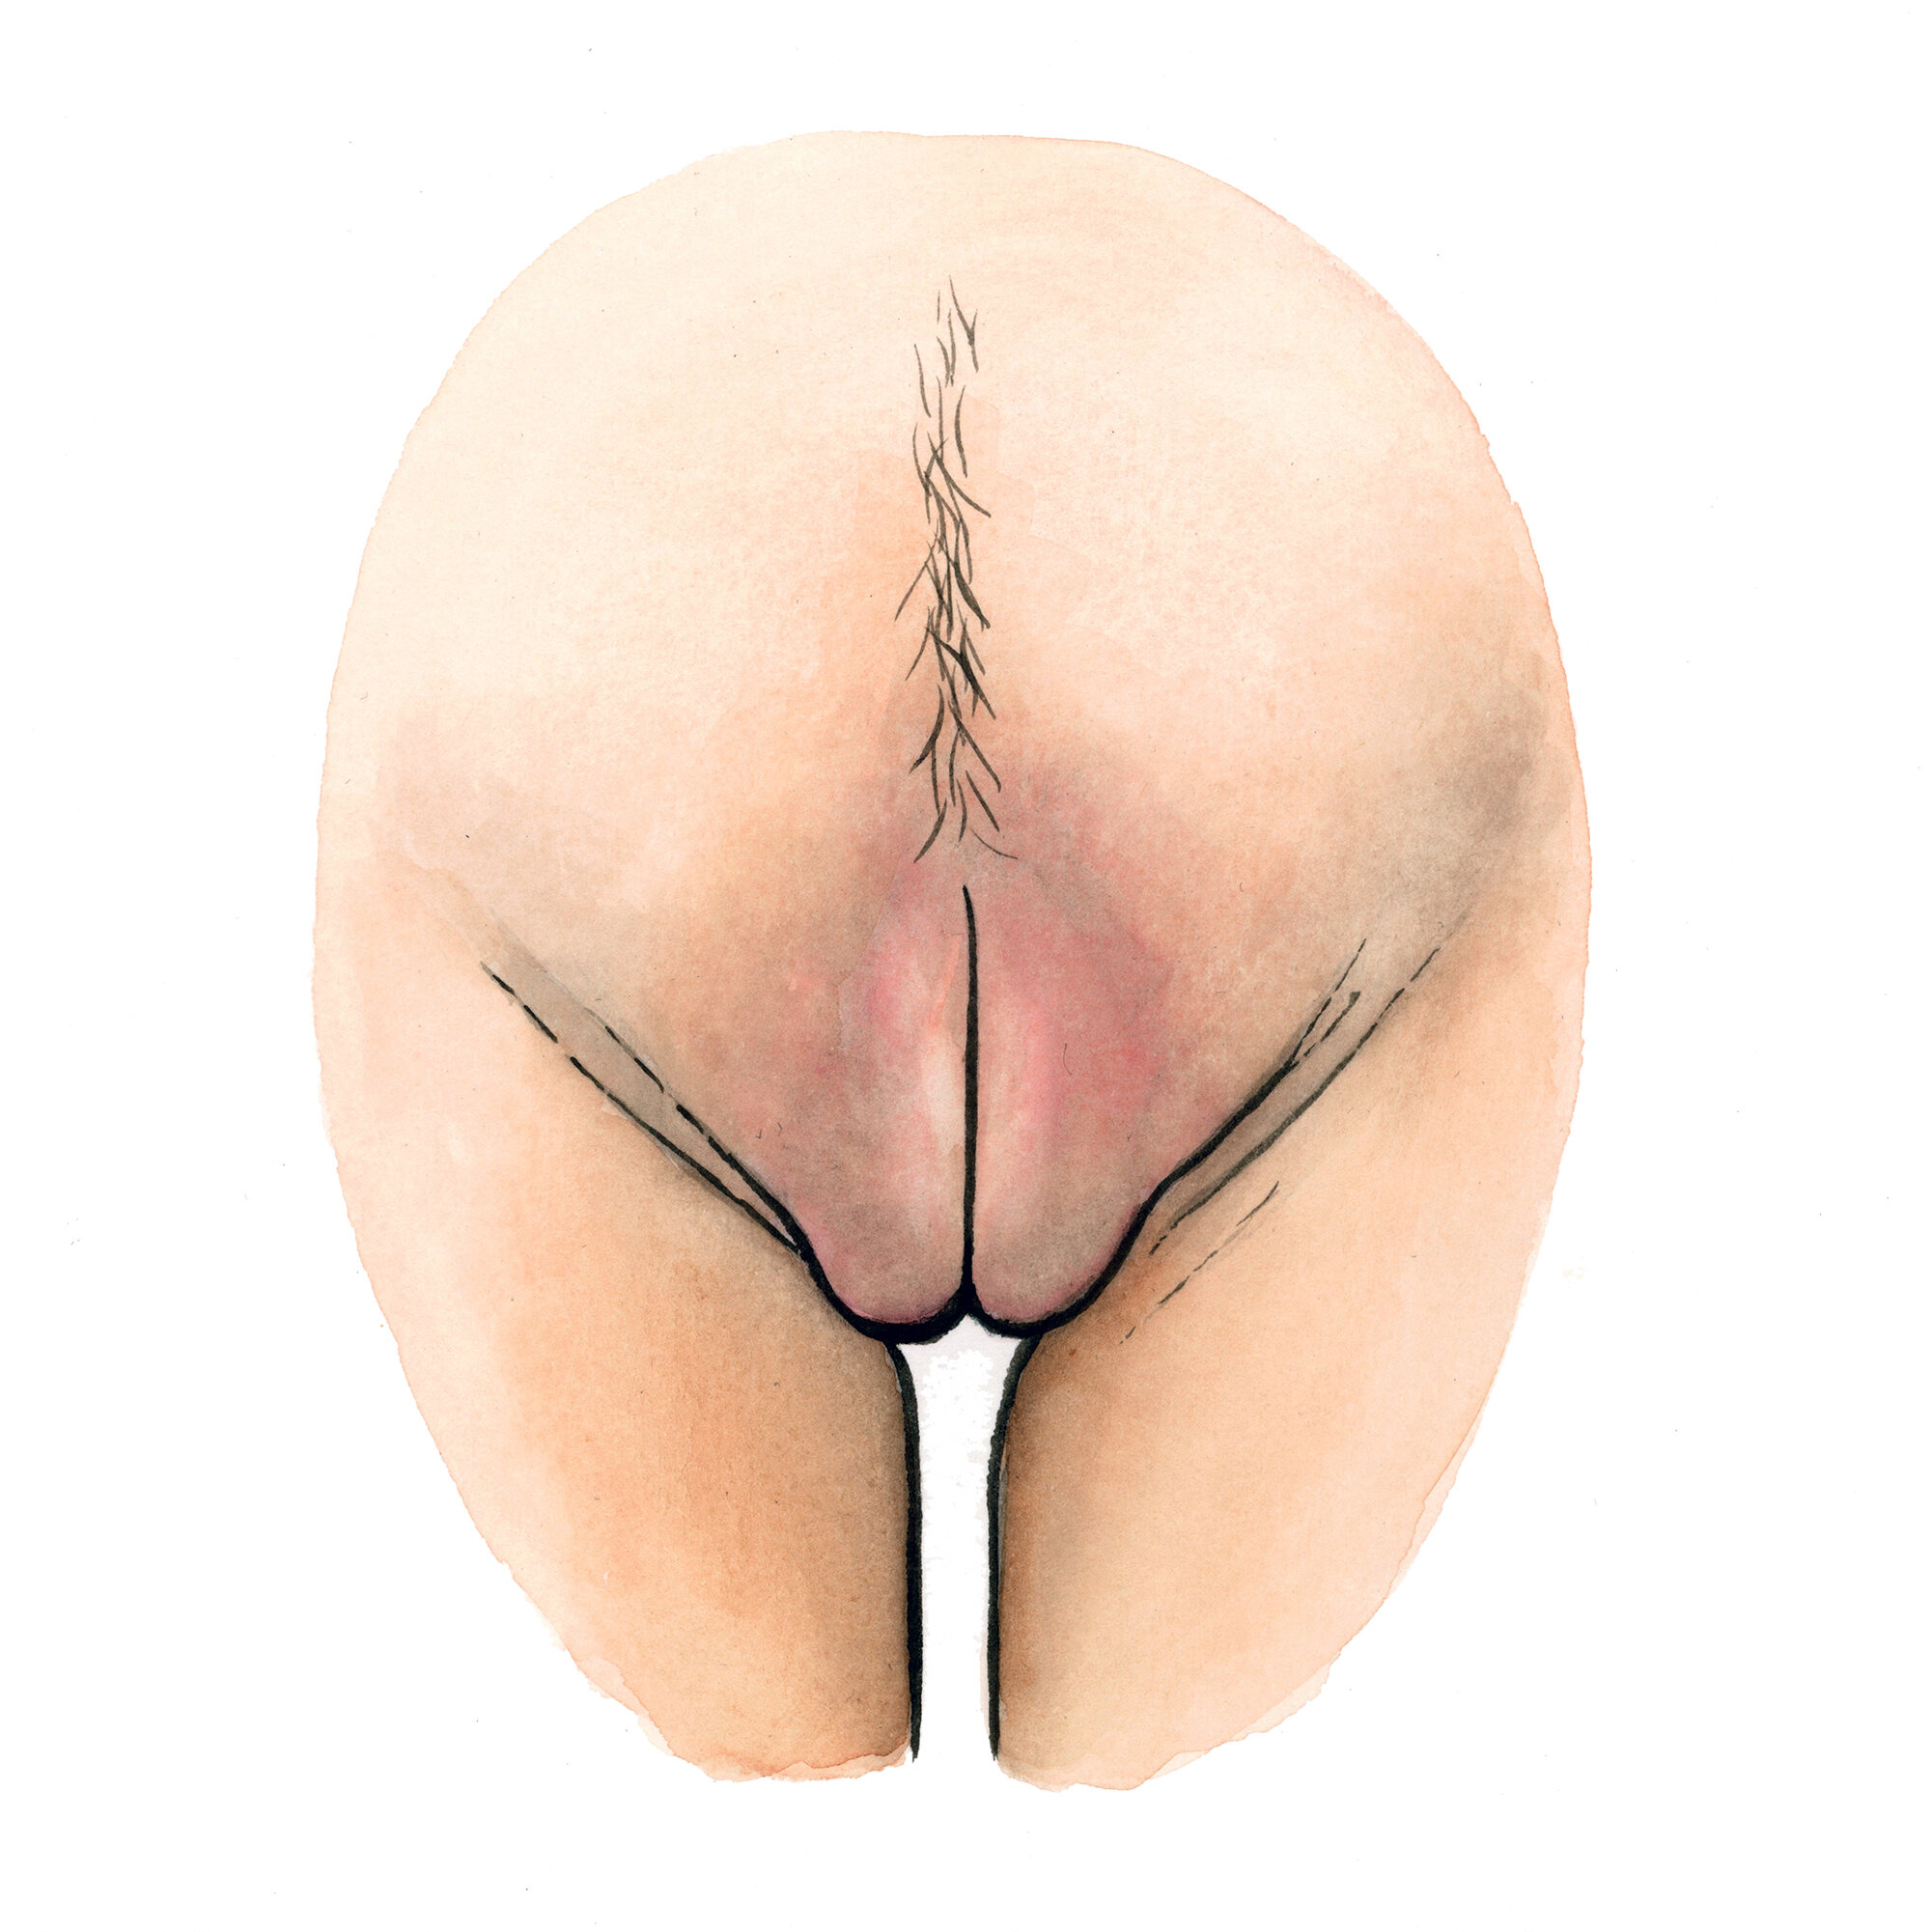 Galerie vulva